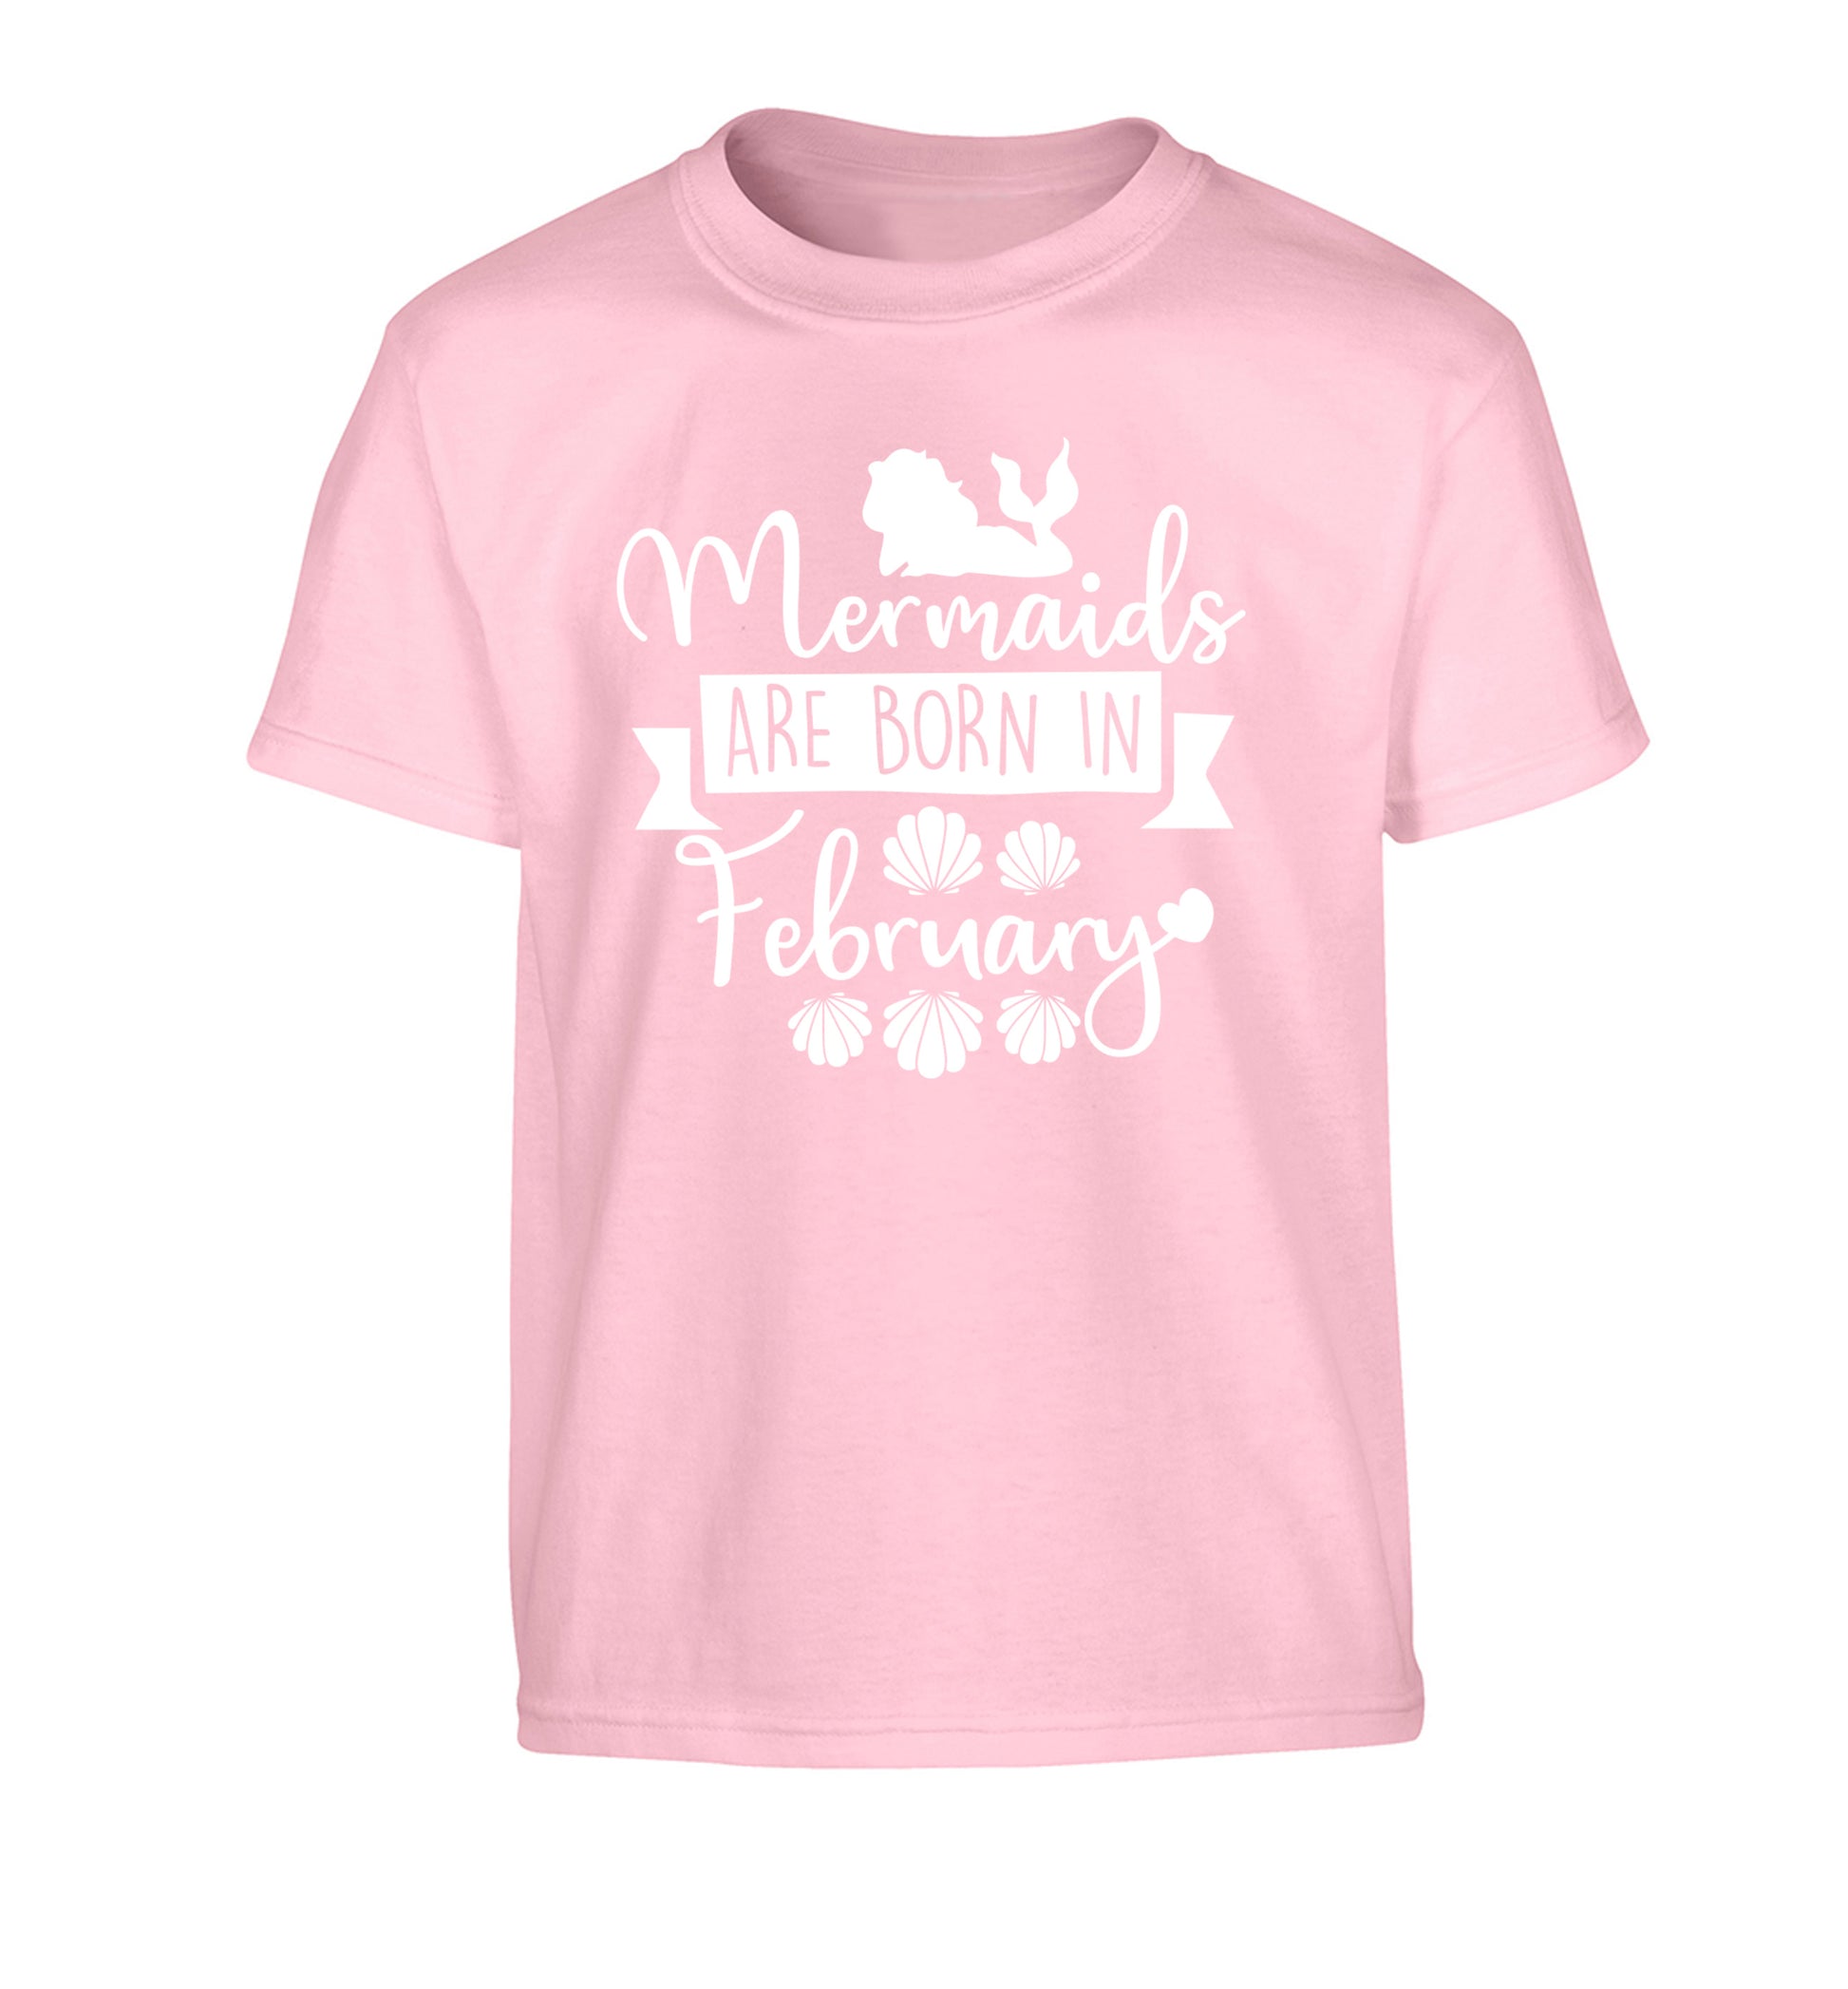 Mermaids are born in February Children's light pink Tshirt 12-13 Years